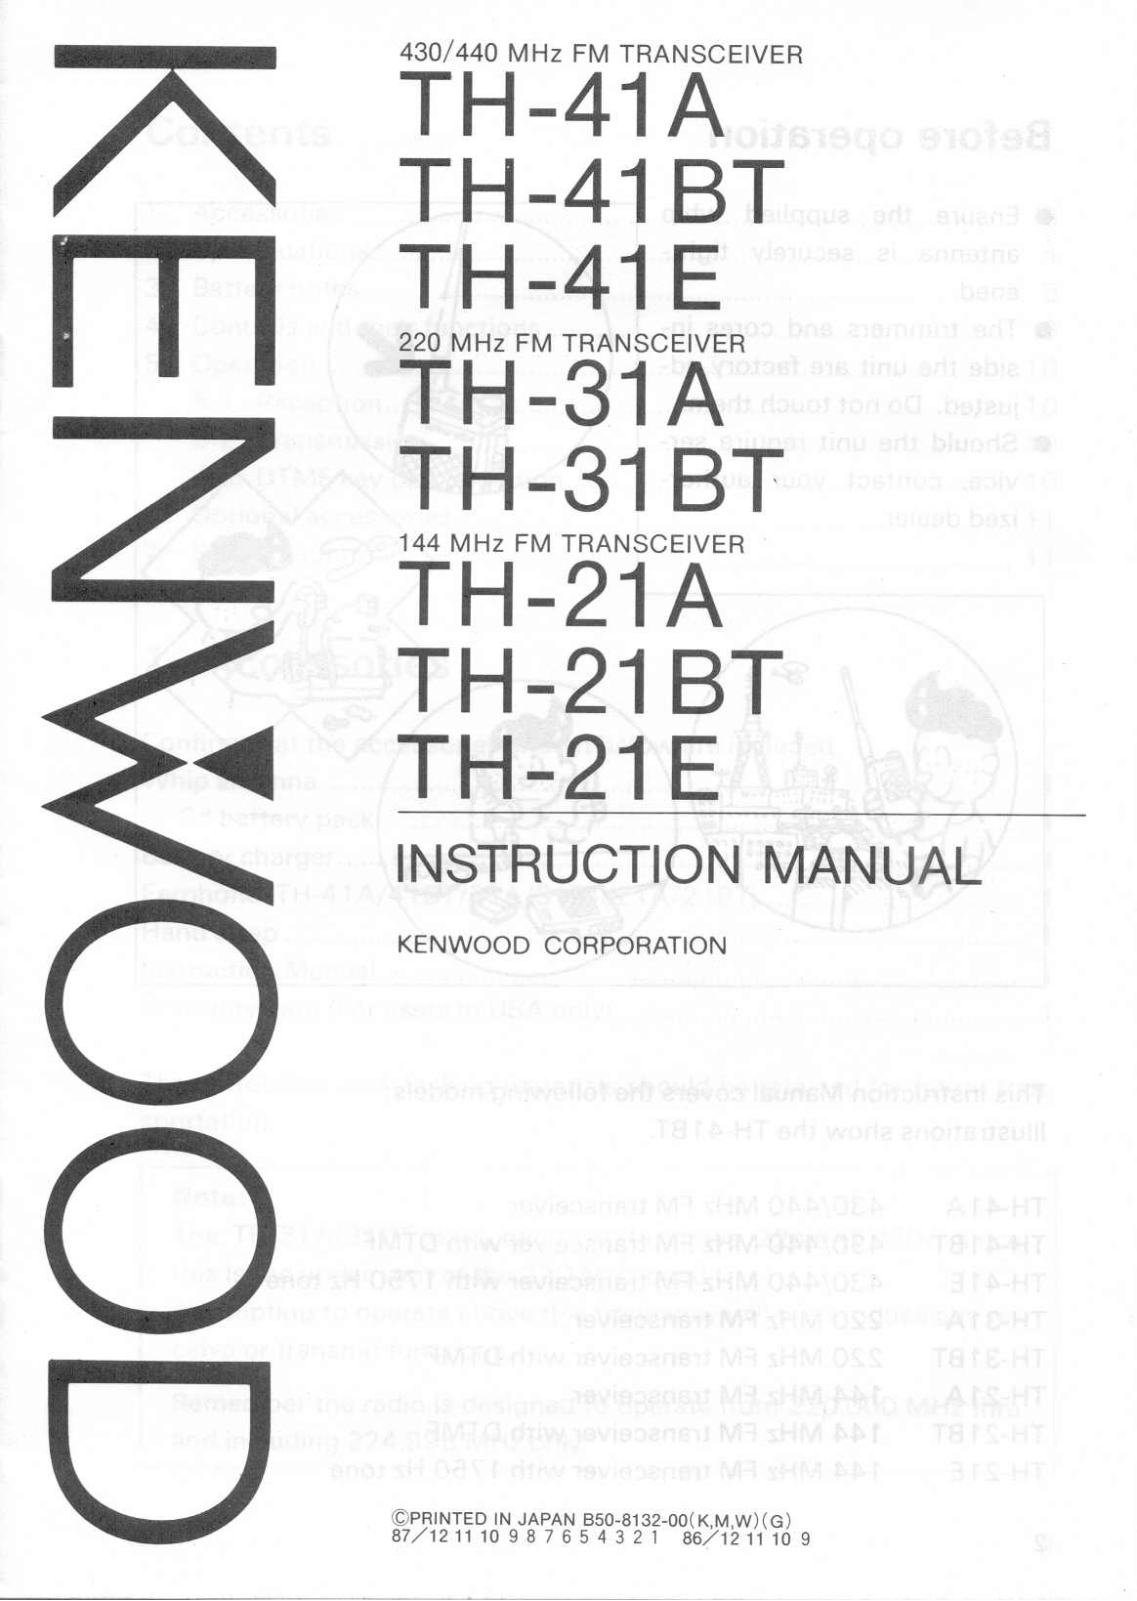 Kenwood TH-21E, TH-31BT, TH-41BT, TH-41A, TH-21A User Manual